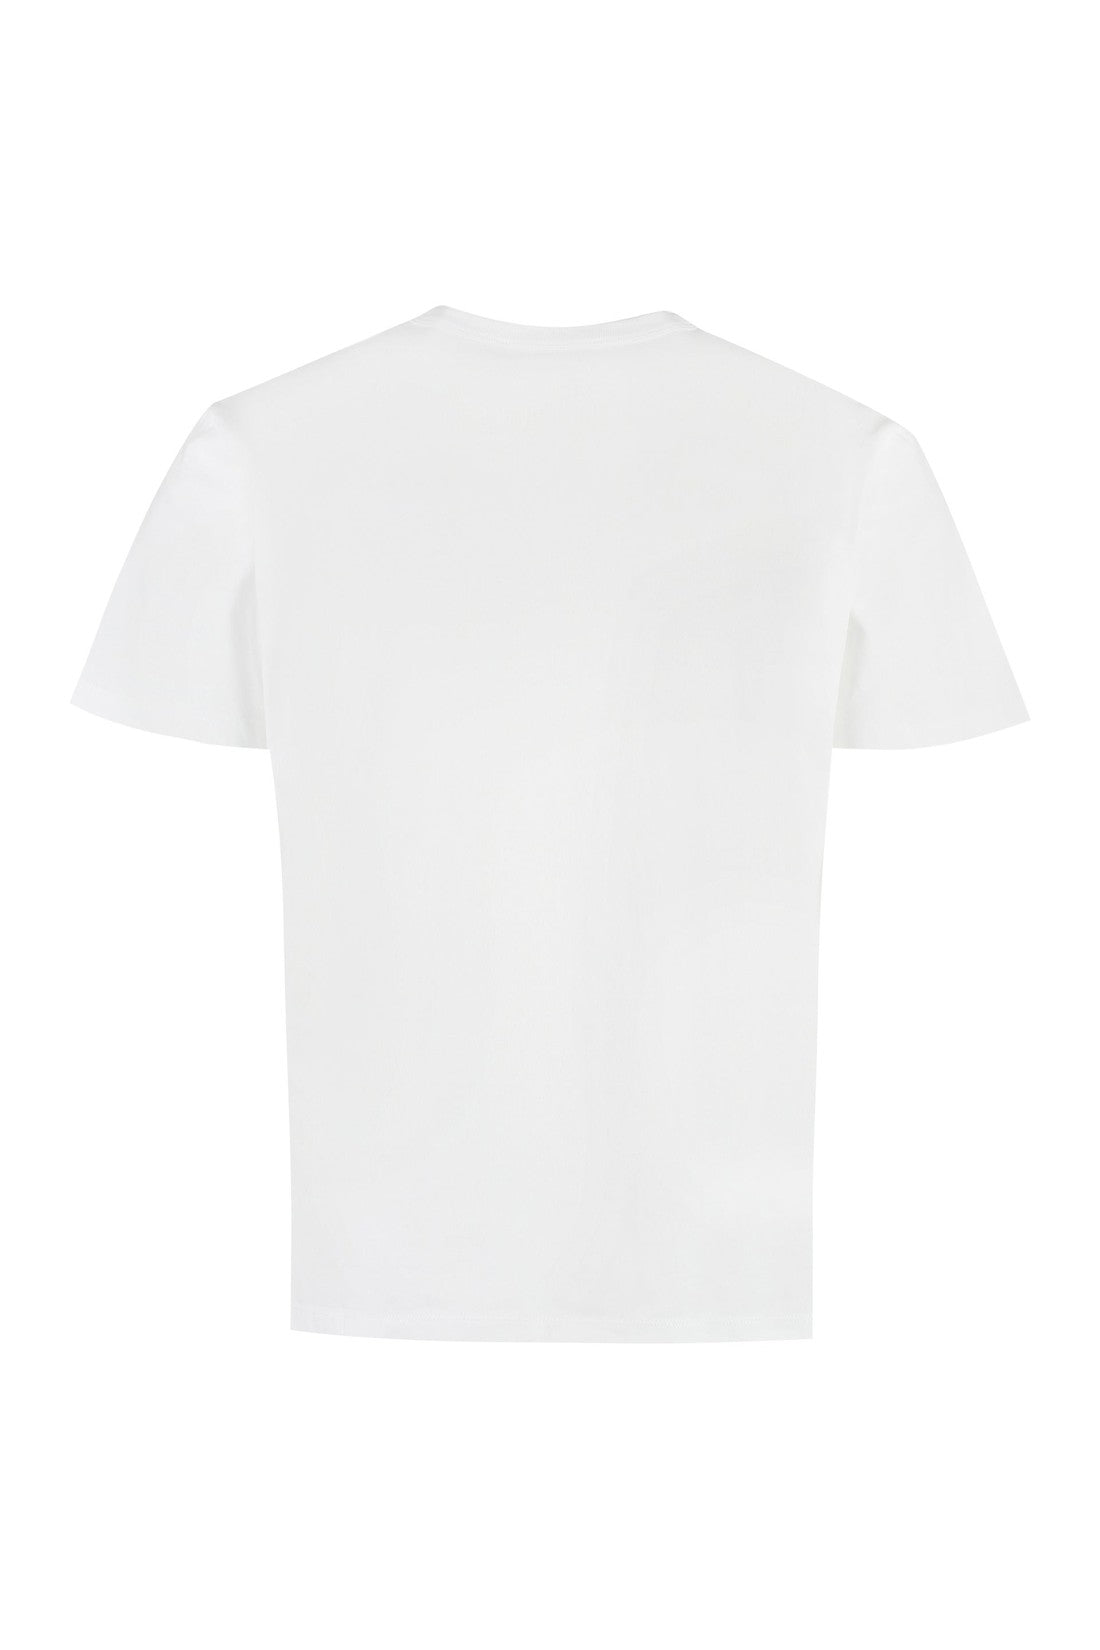 Maison Kitsuné-OUTLET-SALE-Patch detail cotton t-shirt-ARCHIVIST